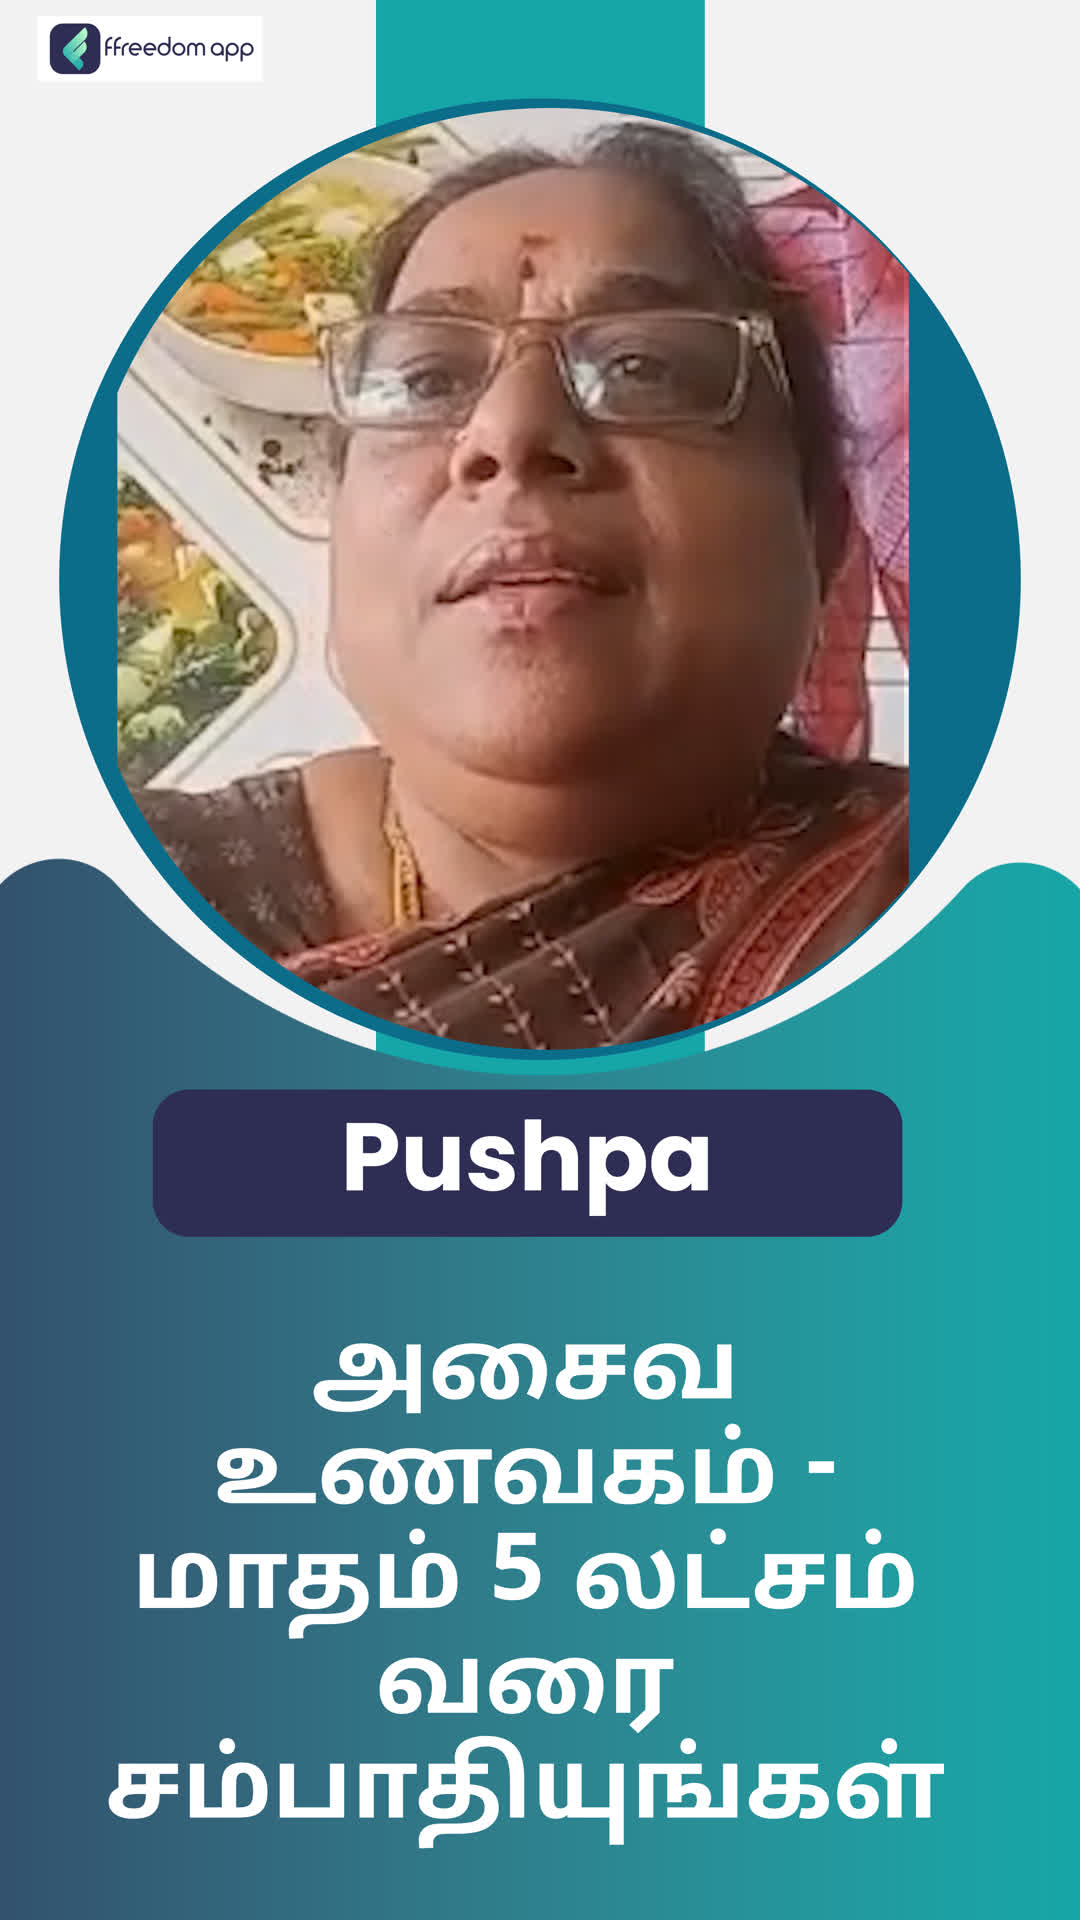 Pushpa's Honest Review of ffreedom app - Calicut ,Kerala